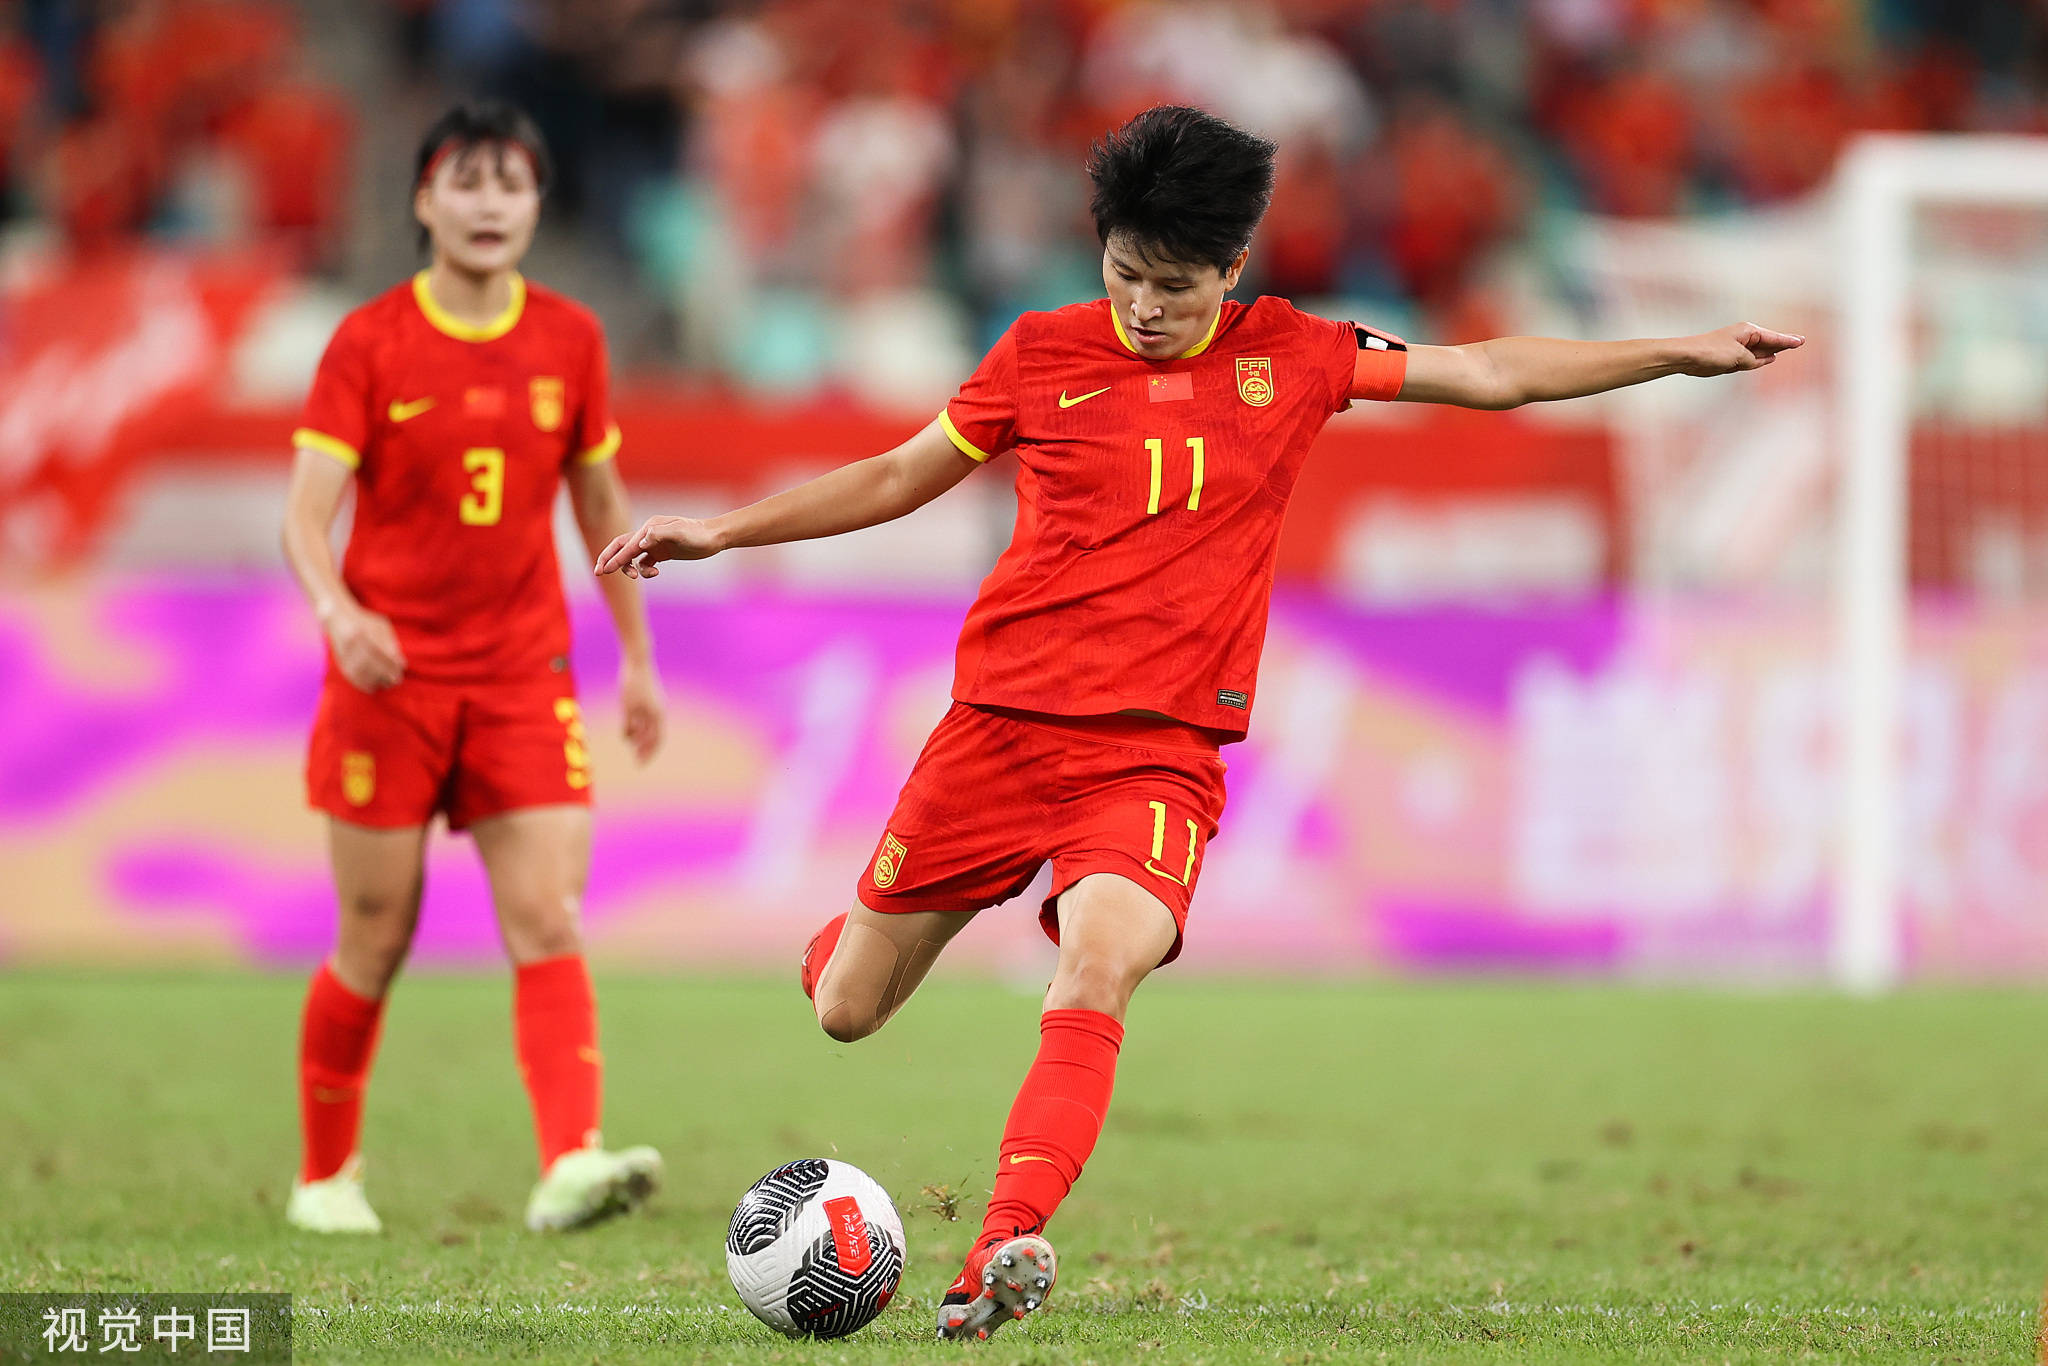 女足踢出最正常状态却遭淘汰 亚洲冠军仅1年时间跌下神坛